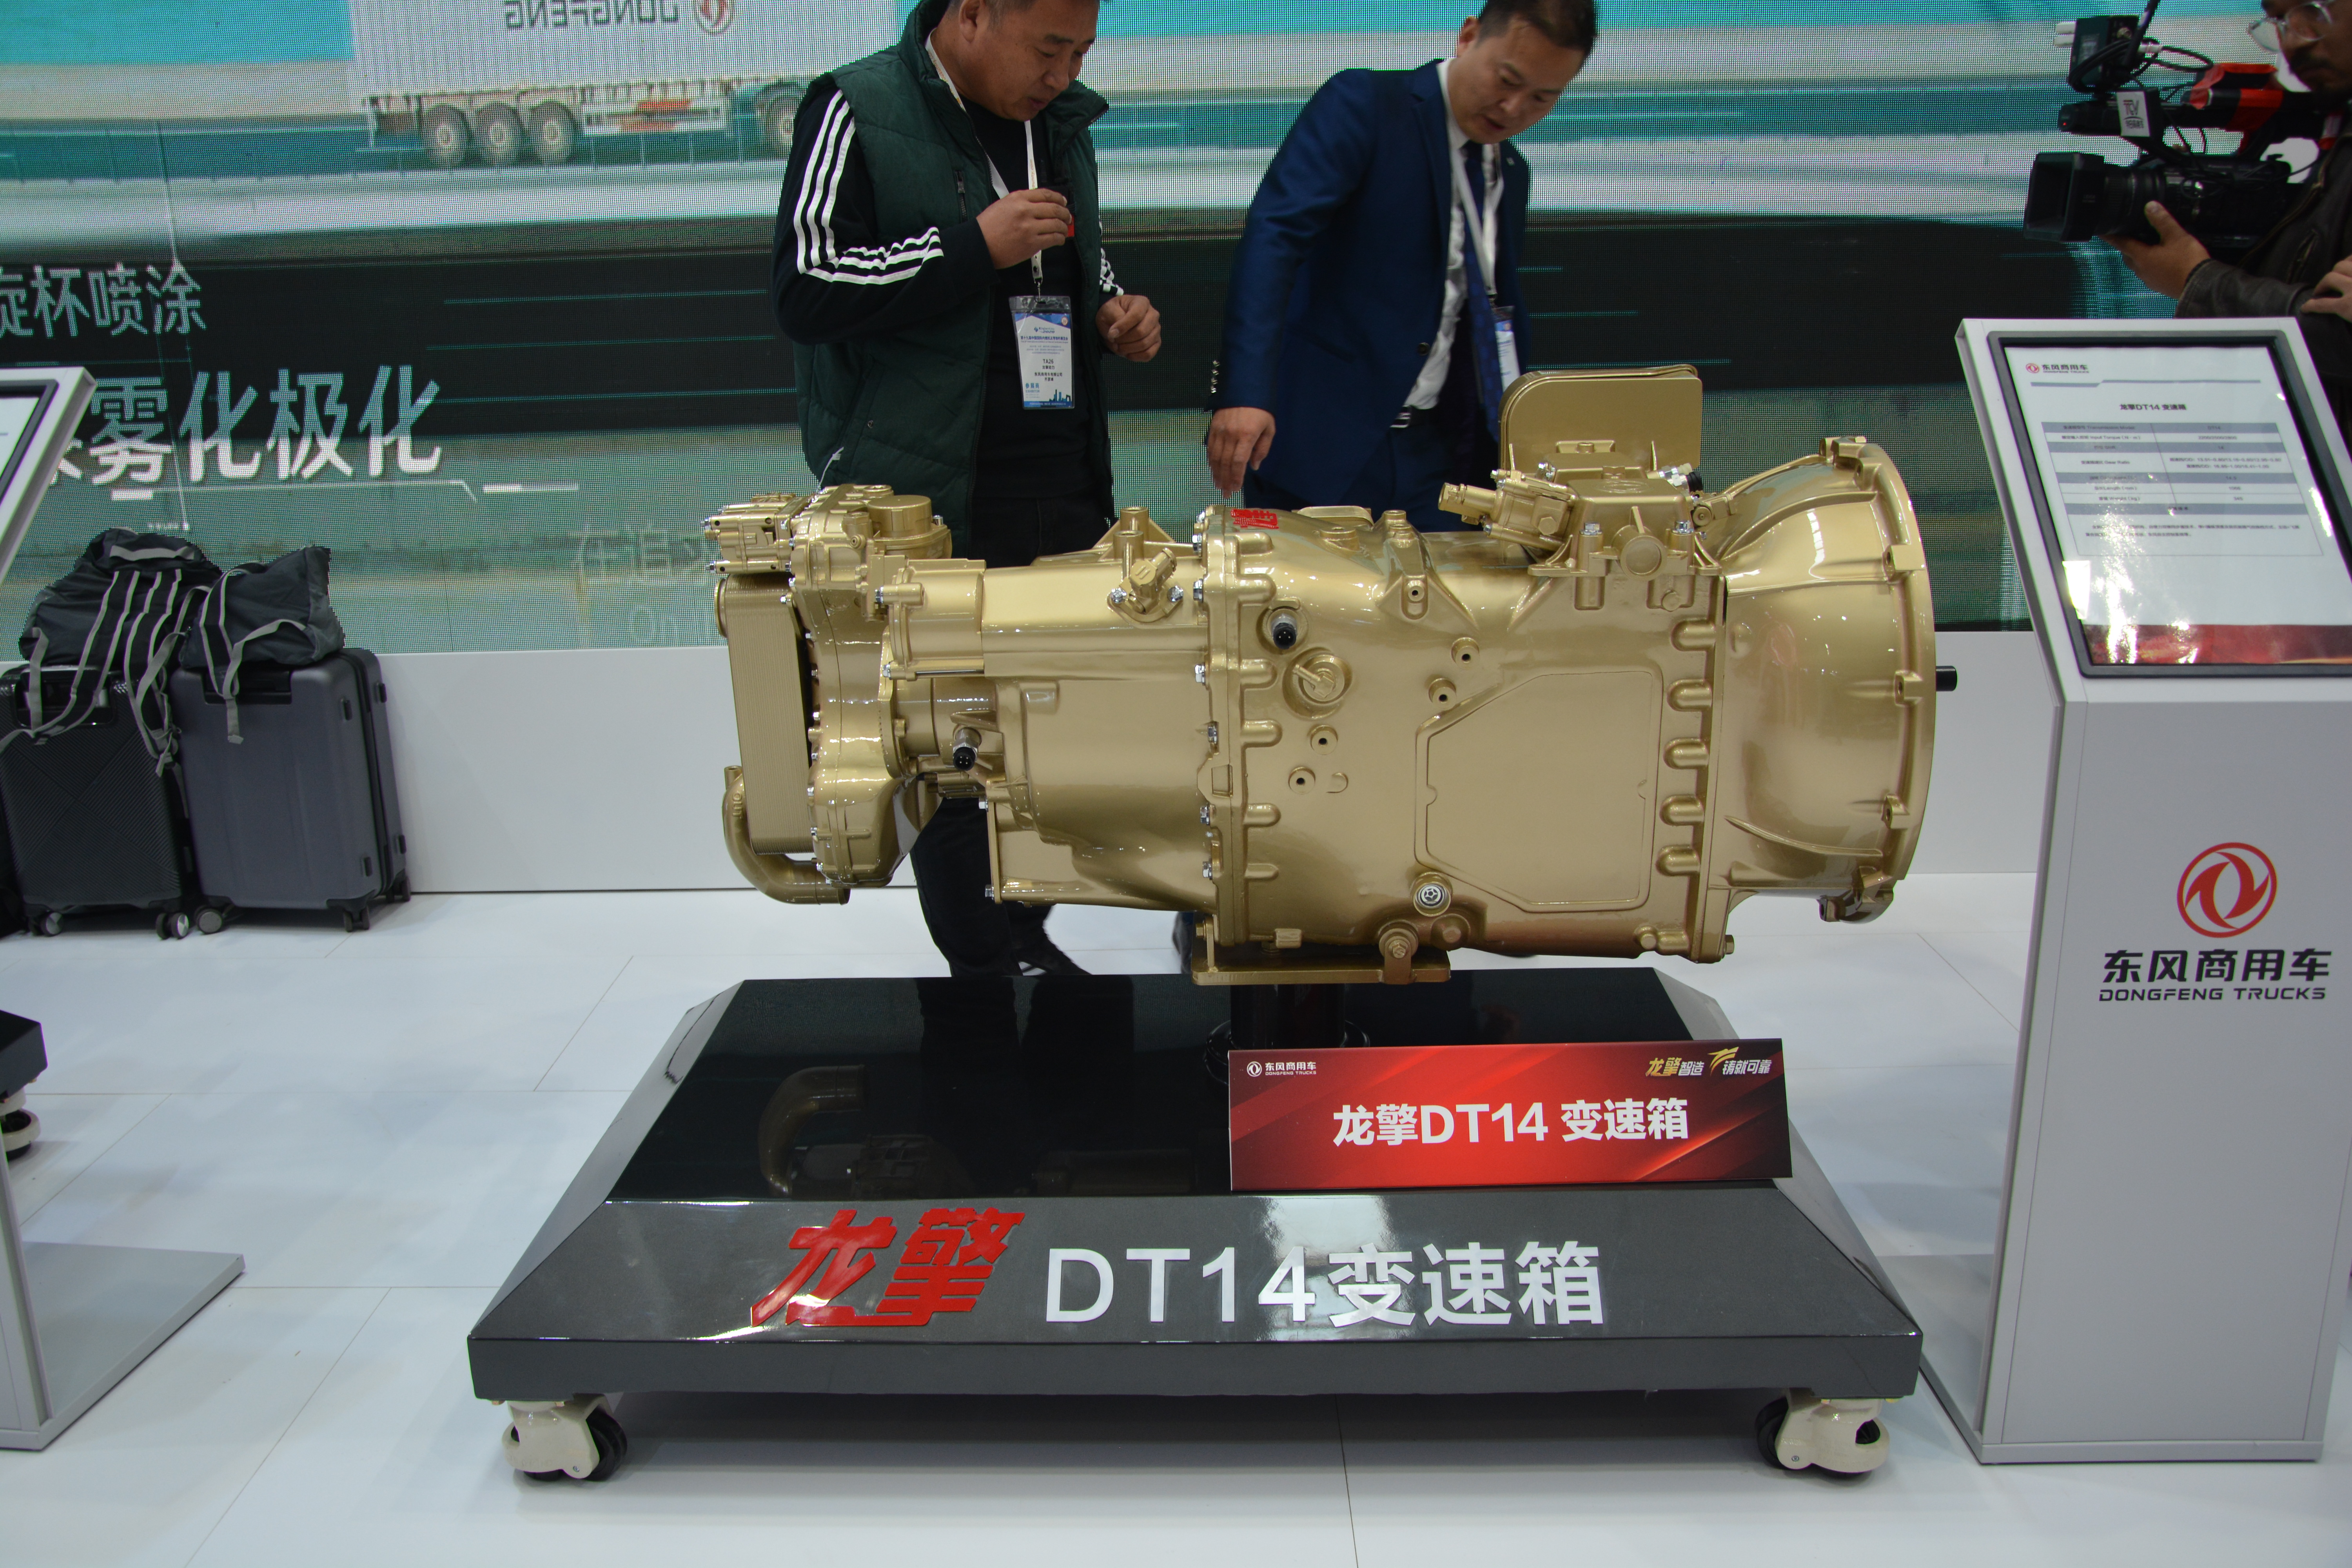 龙擎ddi13发动机上市16l发动机首次亮相